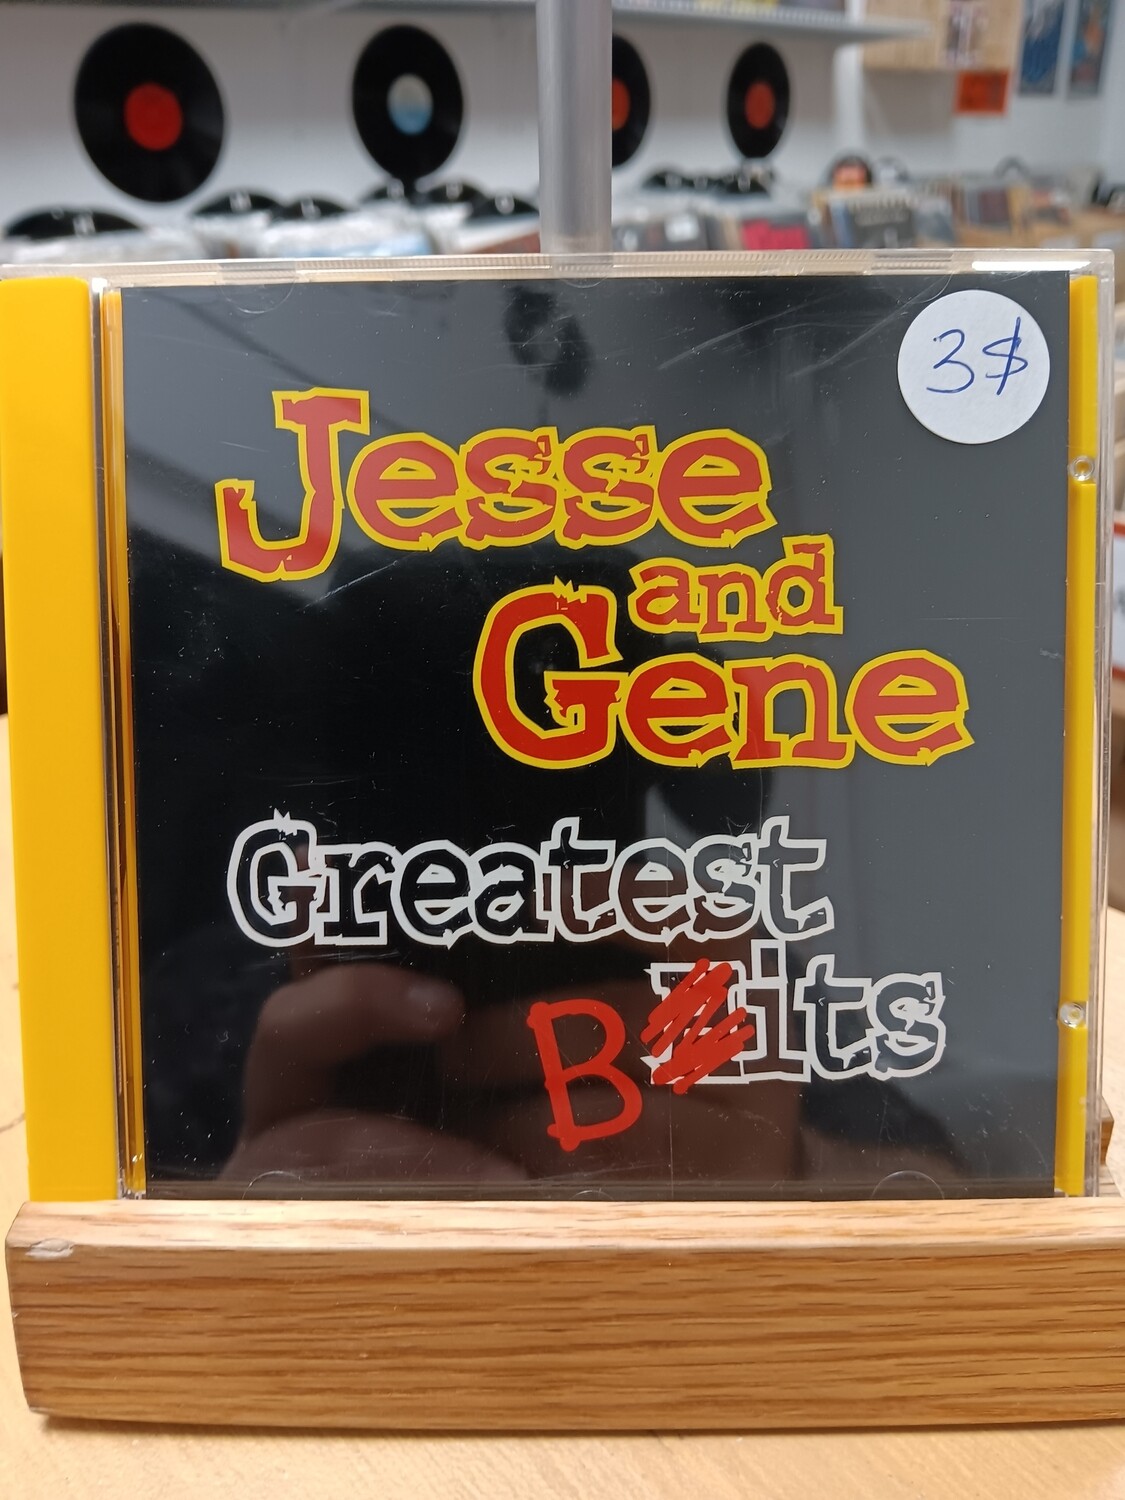 Jesse and Gene - Greatest Bits (CD)